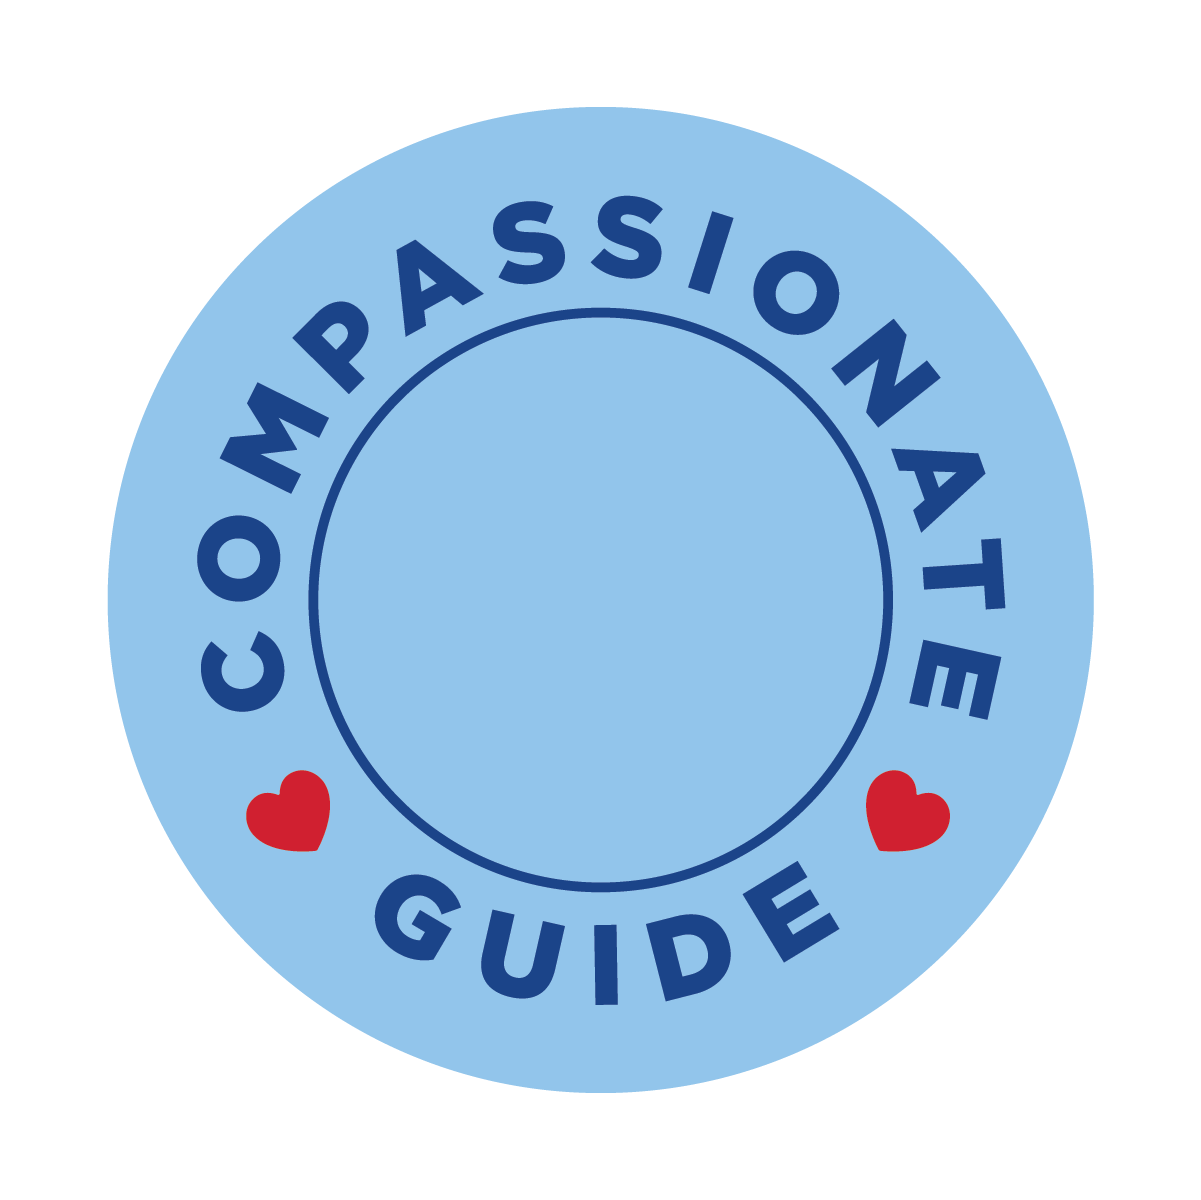 compassionate guide